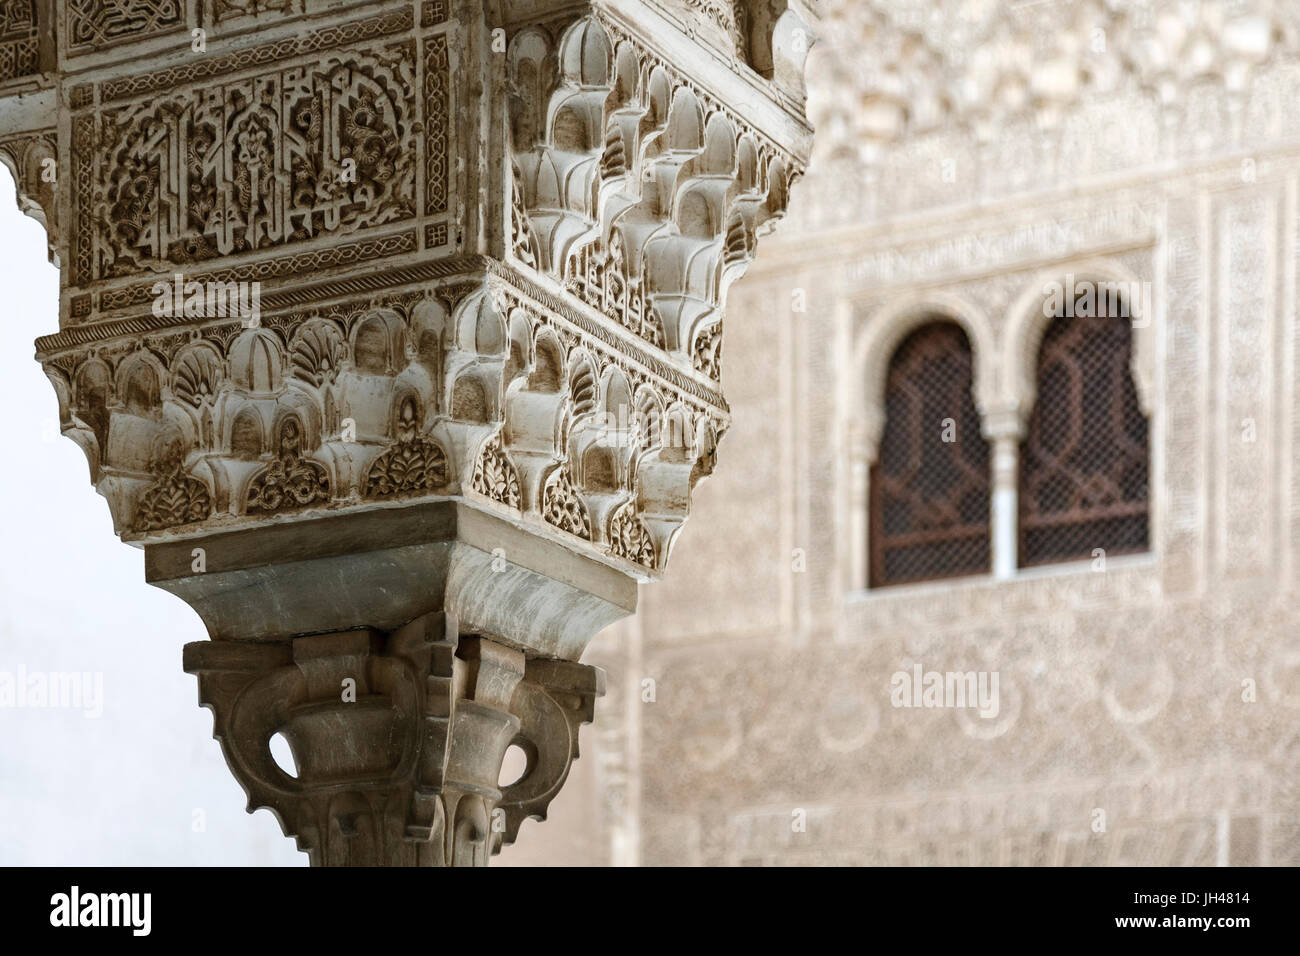 Détail de la colonne, les Palais Nasrides, l'Alhambra, Grenade, Espagne Banque D'Images